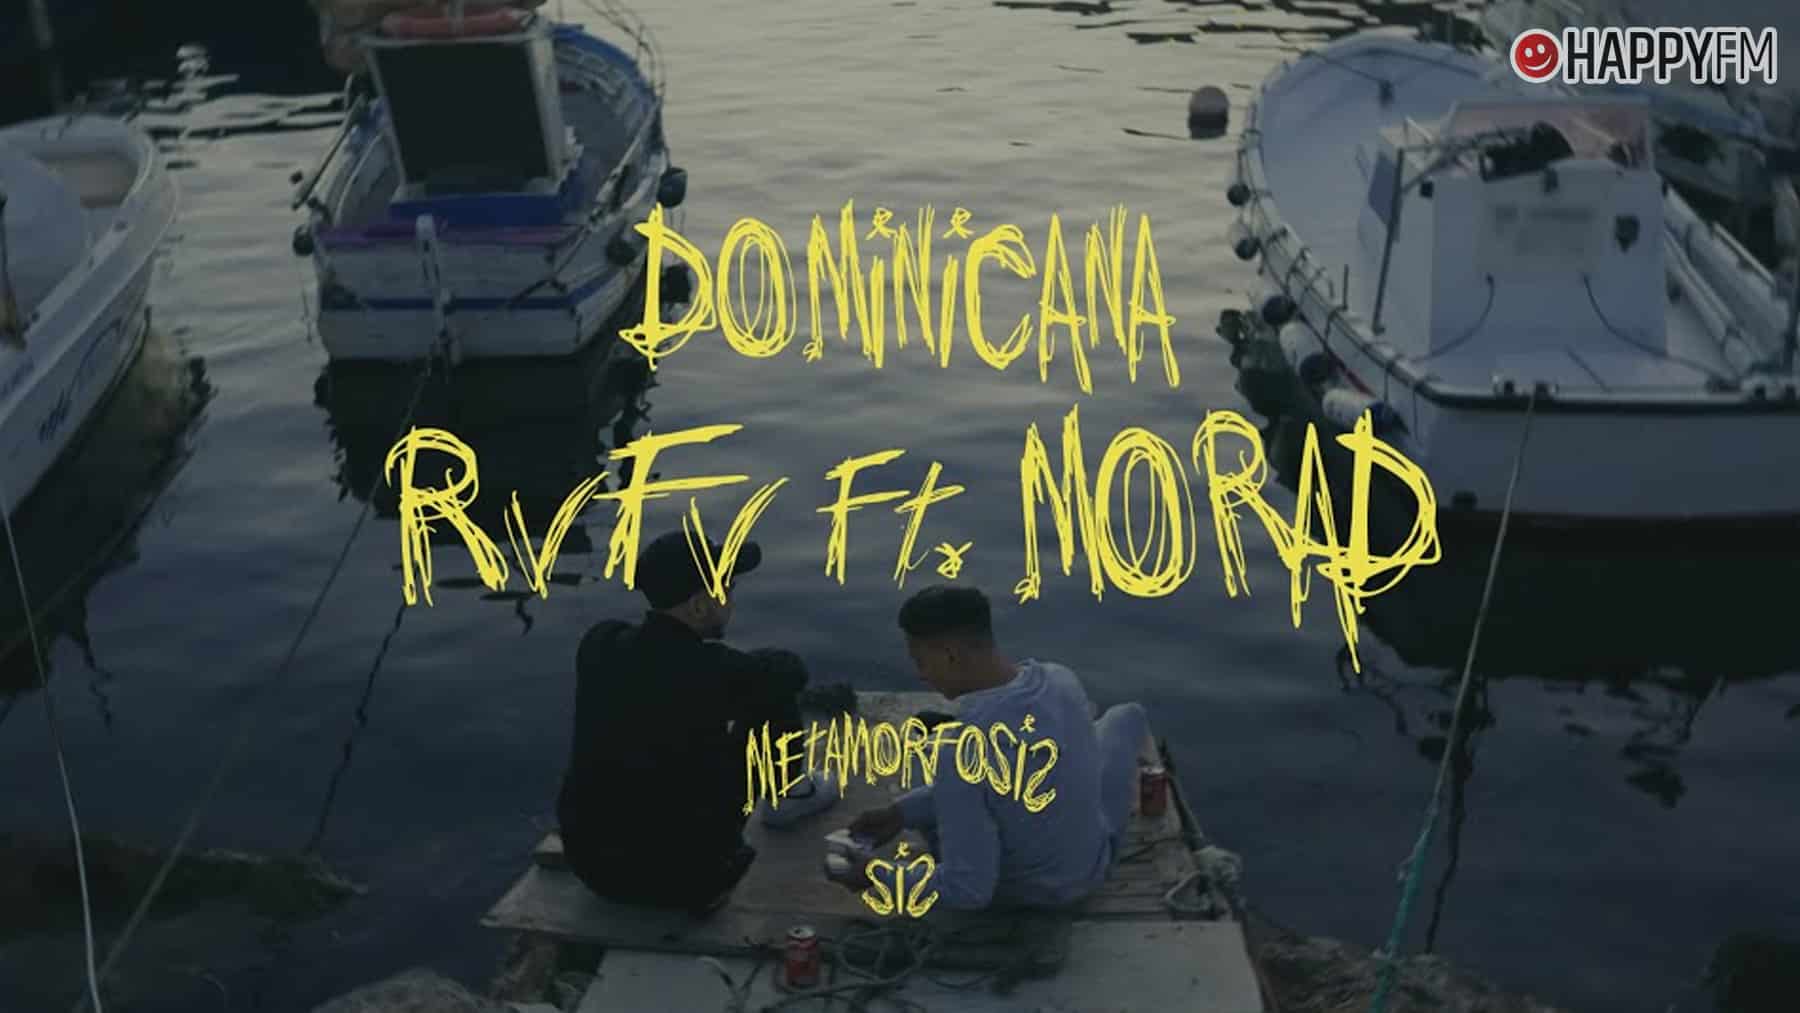 Dominicana de RVFV y Morad letra y video